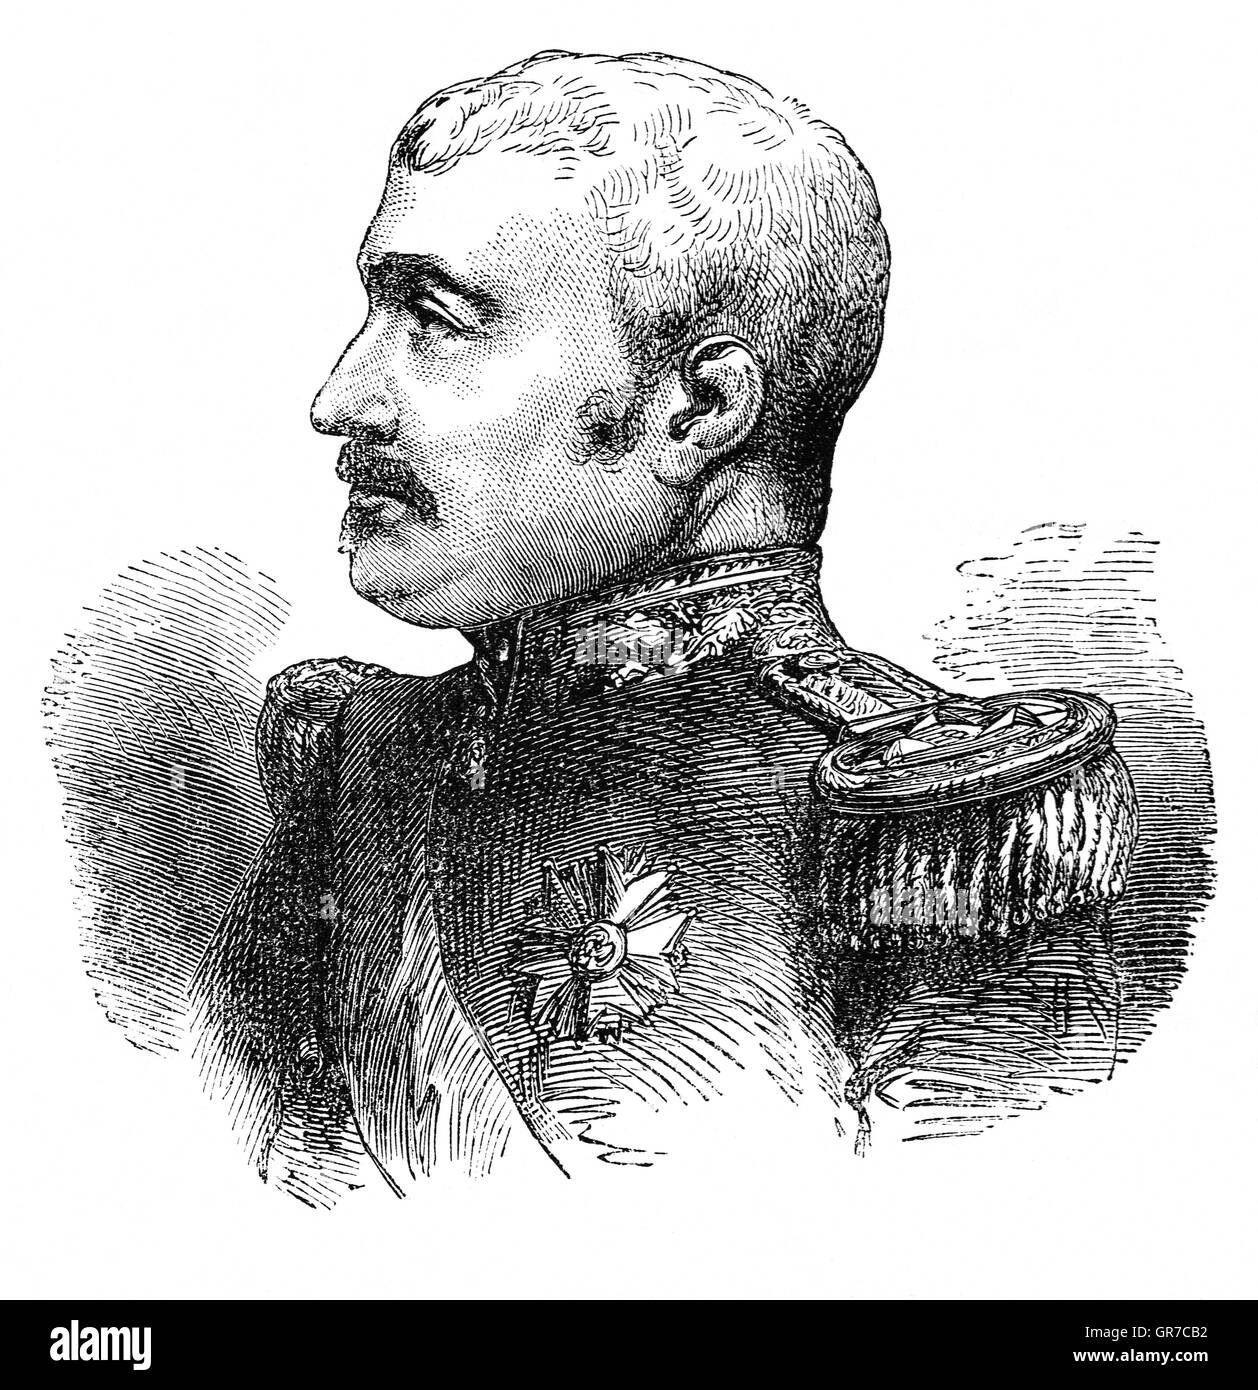 Aimable-Jean-Jacques Pélissier, duc de Malakoff (1794 -1864), était un maréchal de France. En 1855, il réussi Le Maréchal Canrobert, commandant en chef des forces françaises avant le siège de Sébastopol, une commande marquée par la pression constante de l'ennemi et inaltérable détermination à mener la campagne sans ingérence de Paris. Sa persévérance a été couronnée de succès dans l'assaut de la tour de Malakoff qui s'est terminé le siège de Sébastopol, couronnant la guerre anglo-française contre la Russie avec la victoire. Banque D'Images